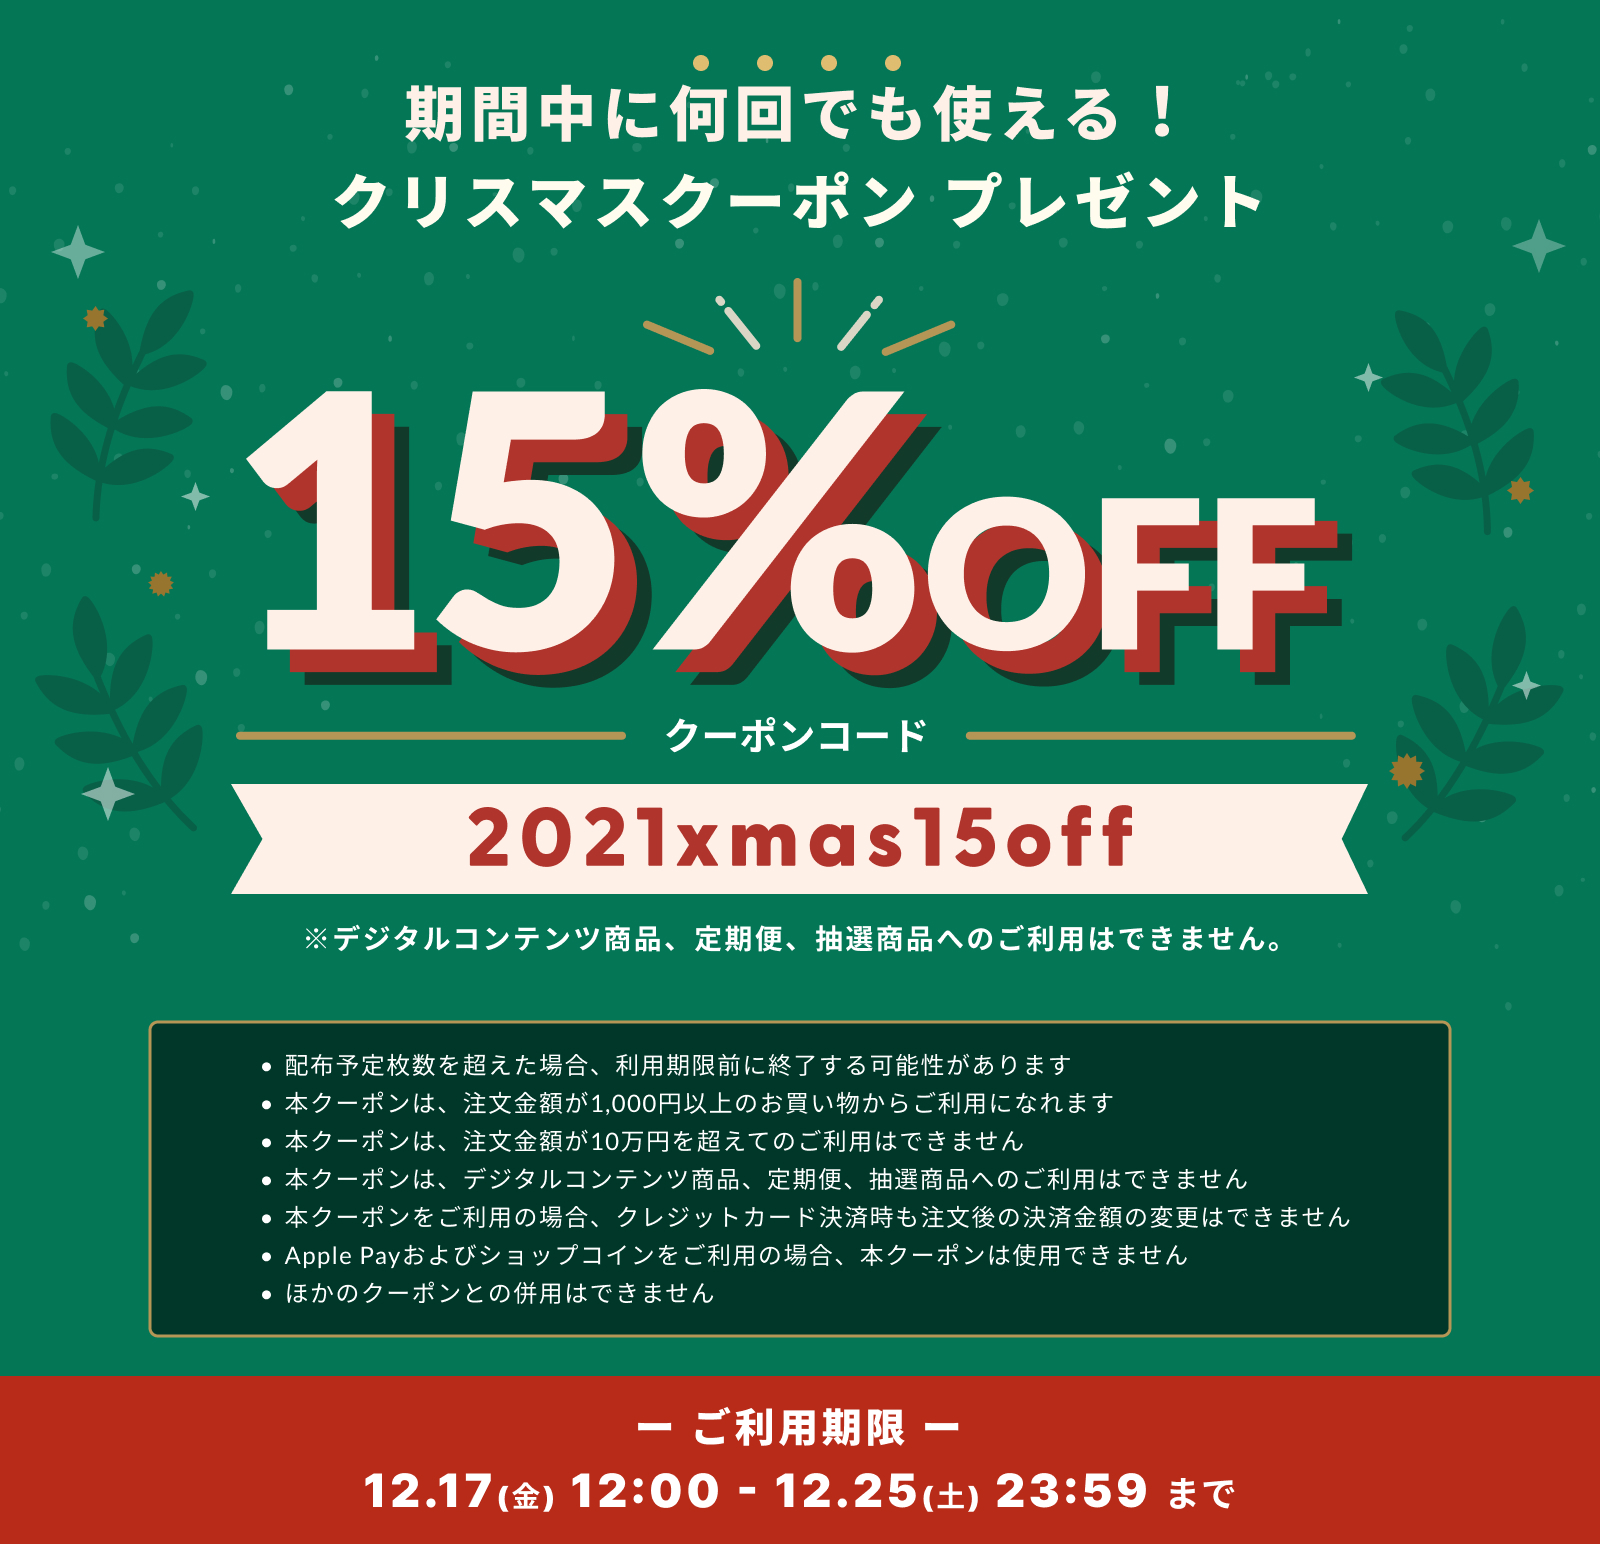 【12/17~12/25限定！】 15%OFFクリスマスクーポン発行、期間中は何回でも使用できます。